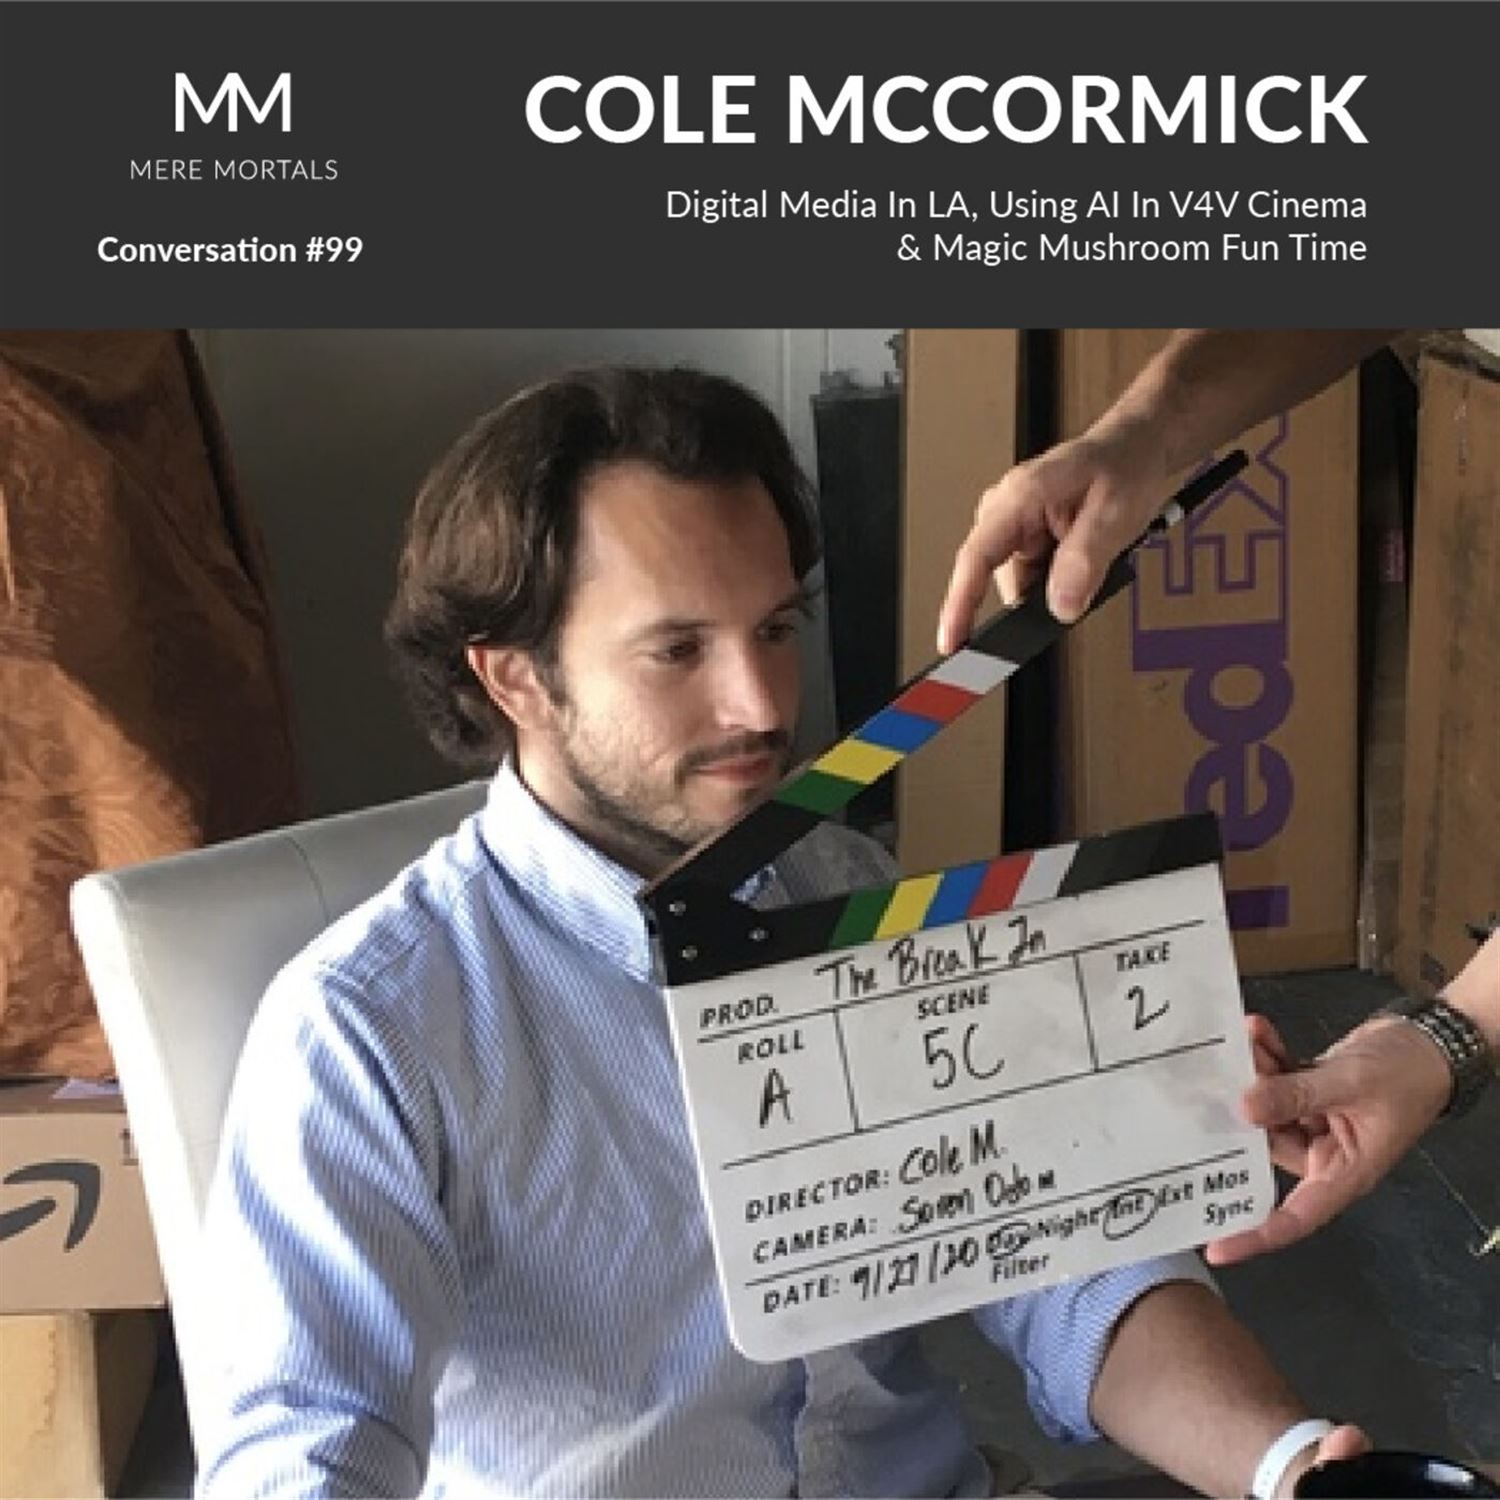 COLE MCCORMICK | Digital Media In LA, Using AI In V4V Cinema & Magic Mushroom Fun Time